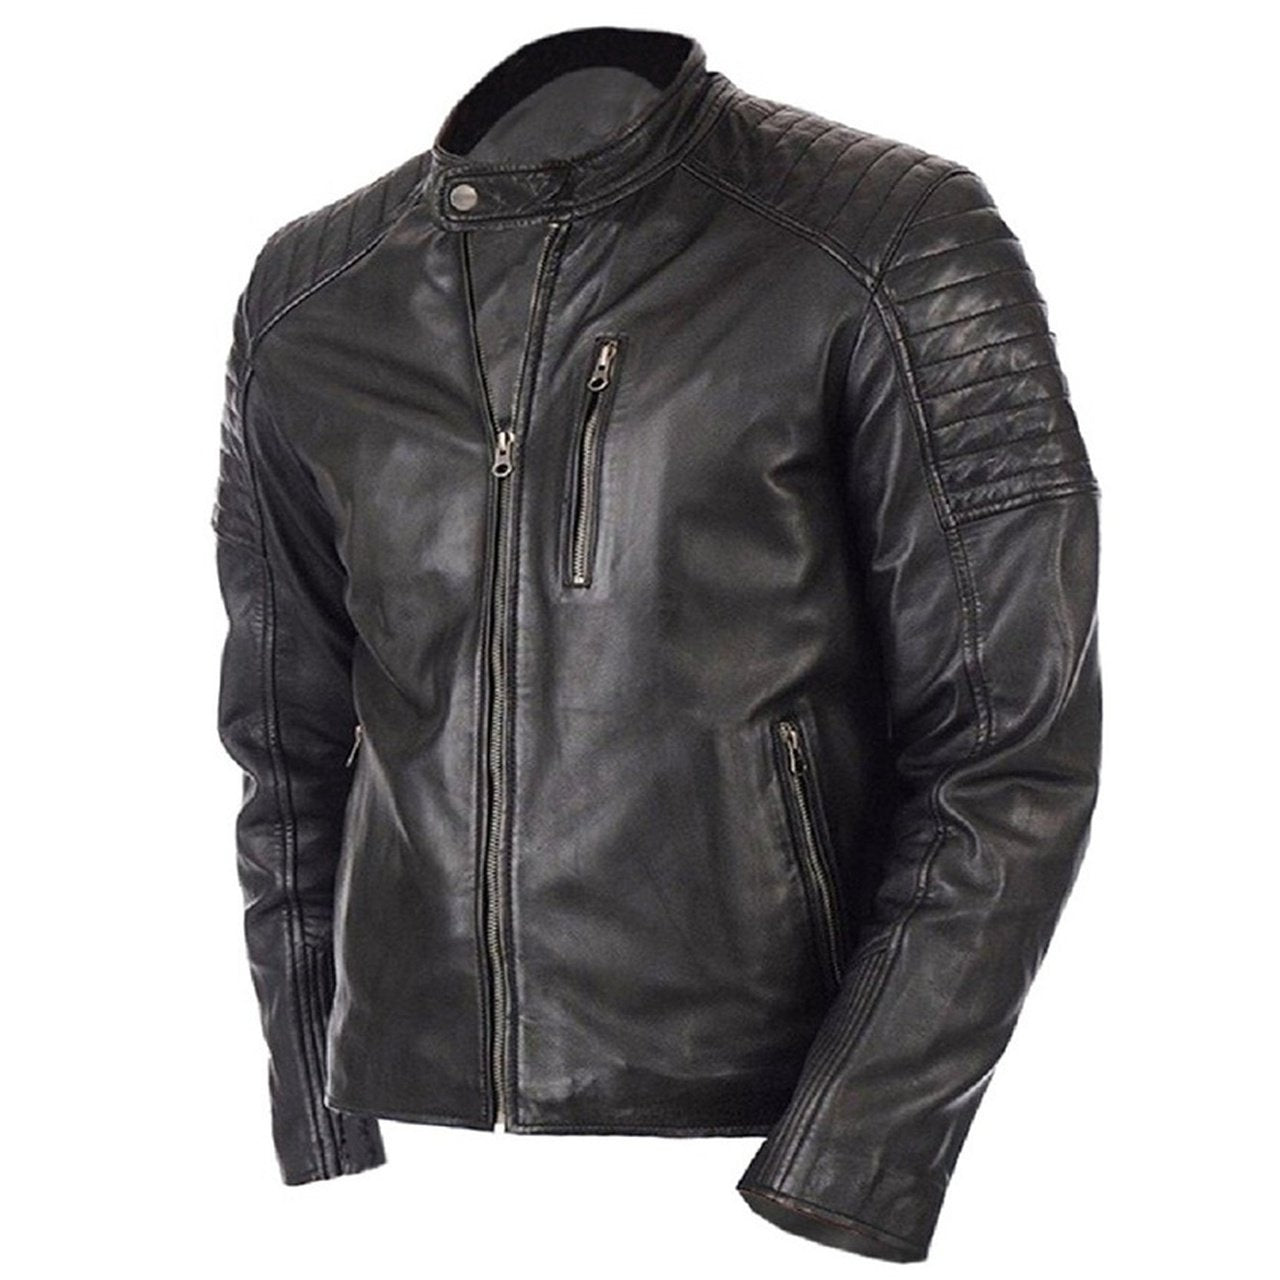 Vintage Biker Genuine Leather Jacket For Men In Black Color - Leather Jacket - Leather Jacket